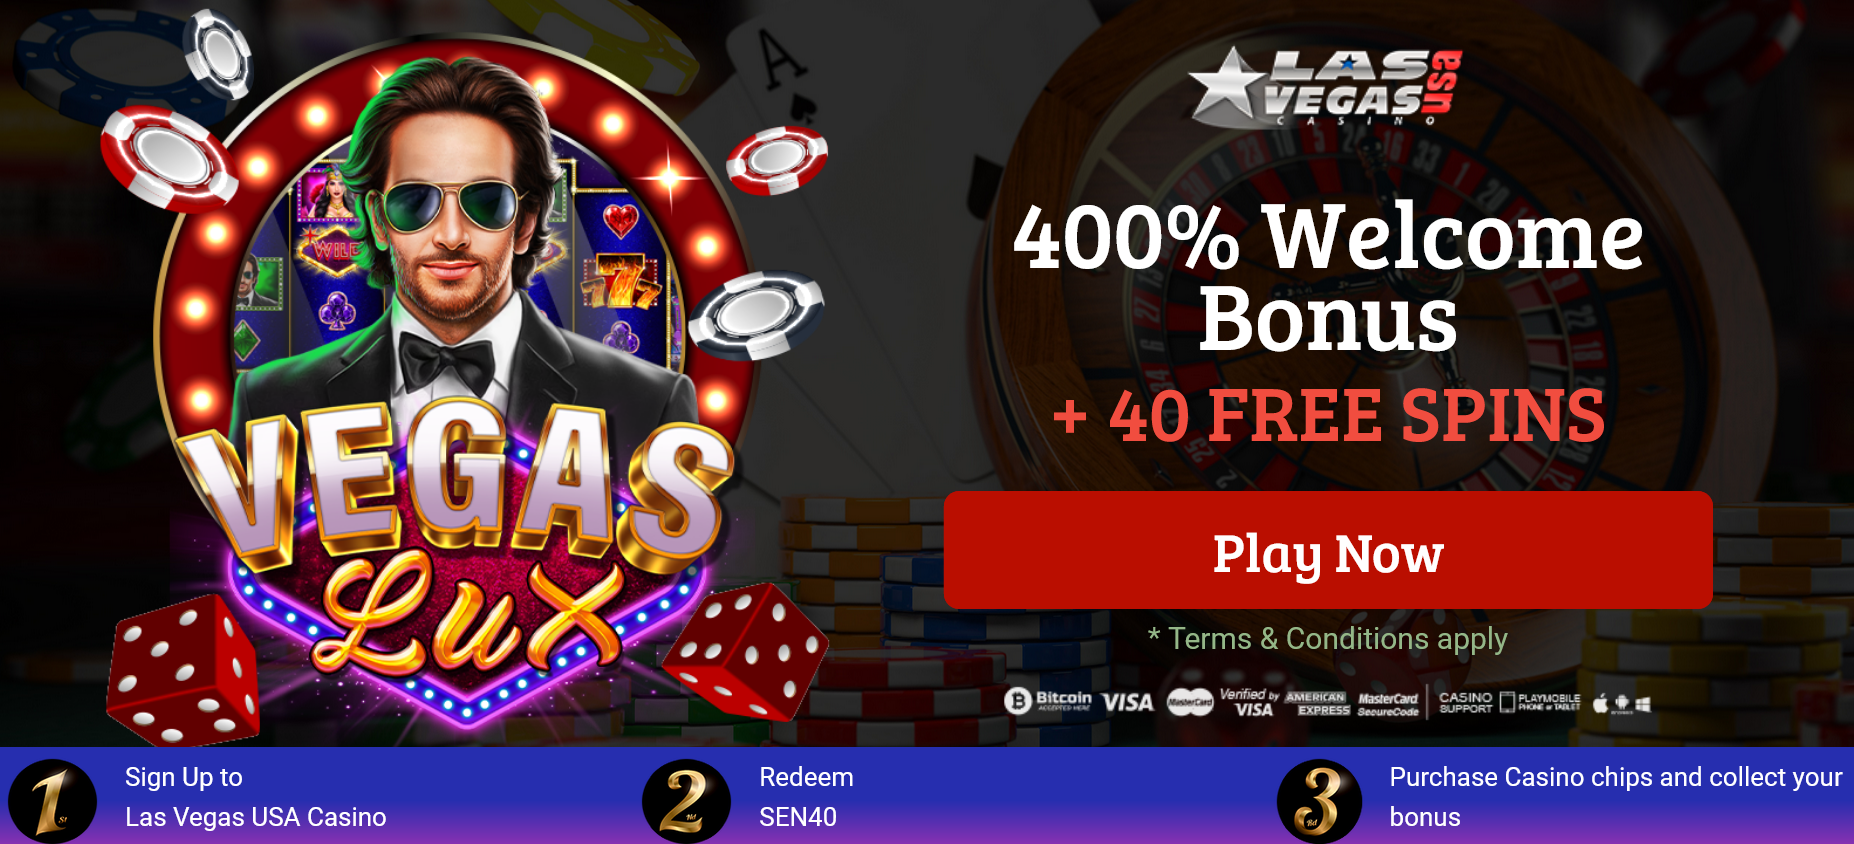 Las Vegas USA Casino - 400%
                                    WELCOME BONUS